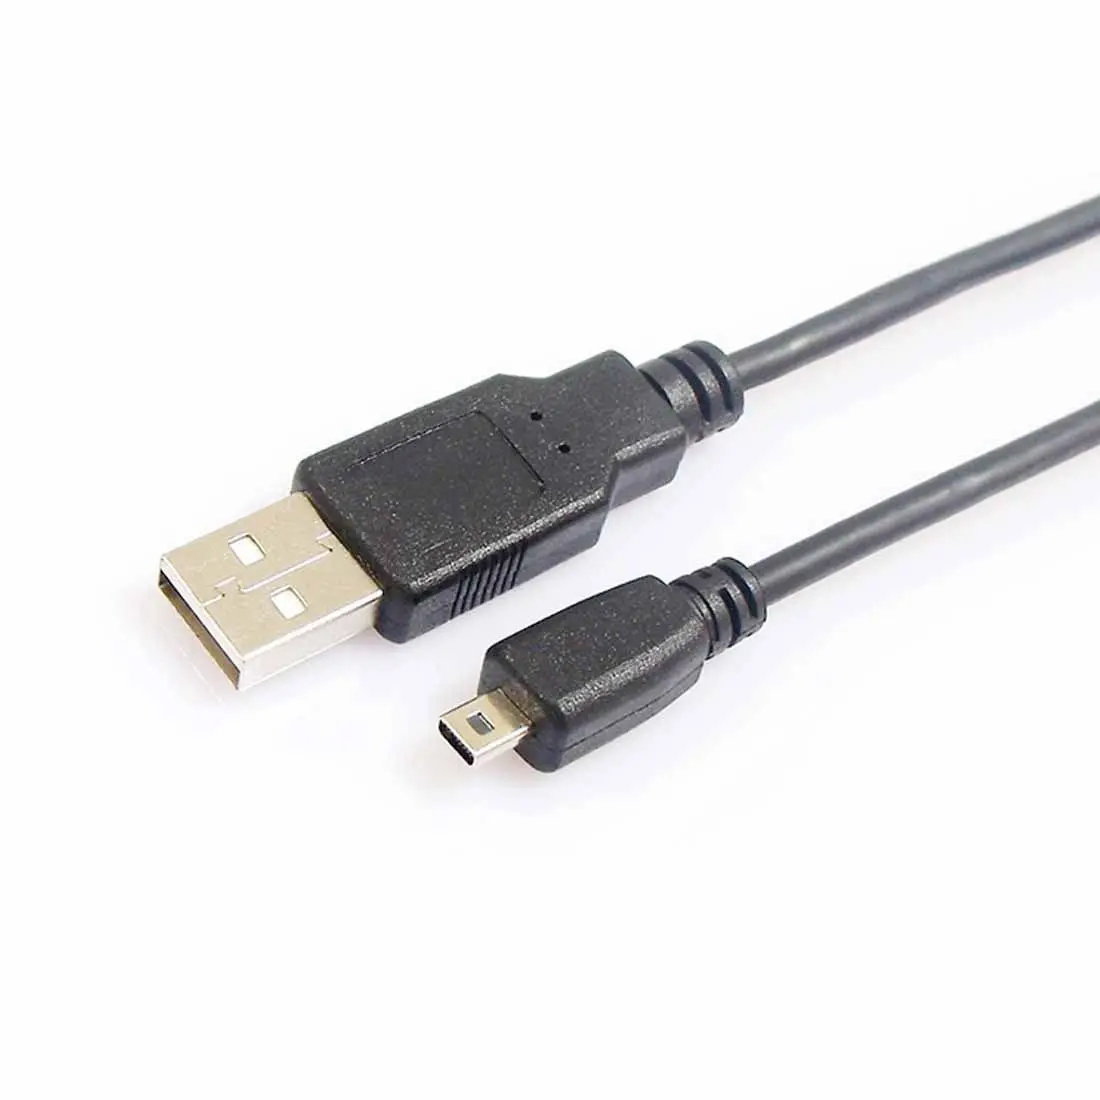 USB data Cable for NIKON Coolpix S100 P7800 P7700 P7100 P6000 _P330 P310 P300 P100 L830 L820 L620 L610 L6 L5 L4 P500 S2800-animated-img